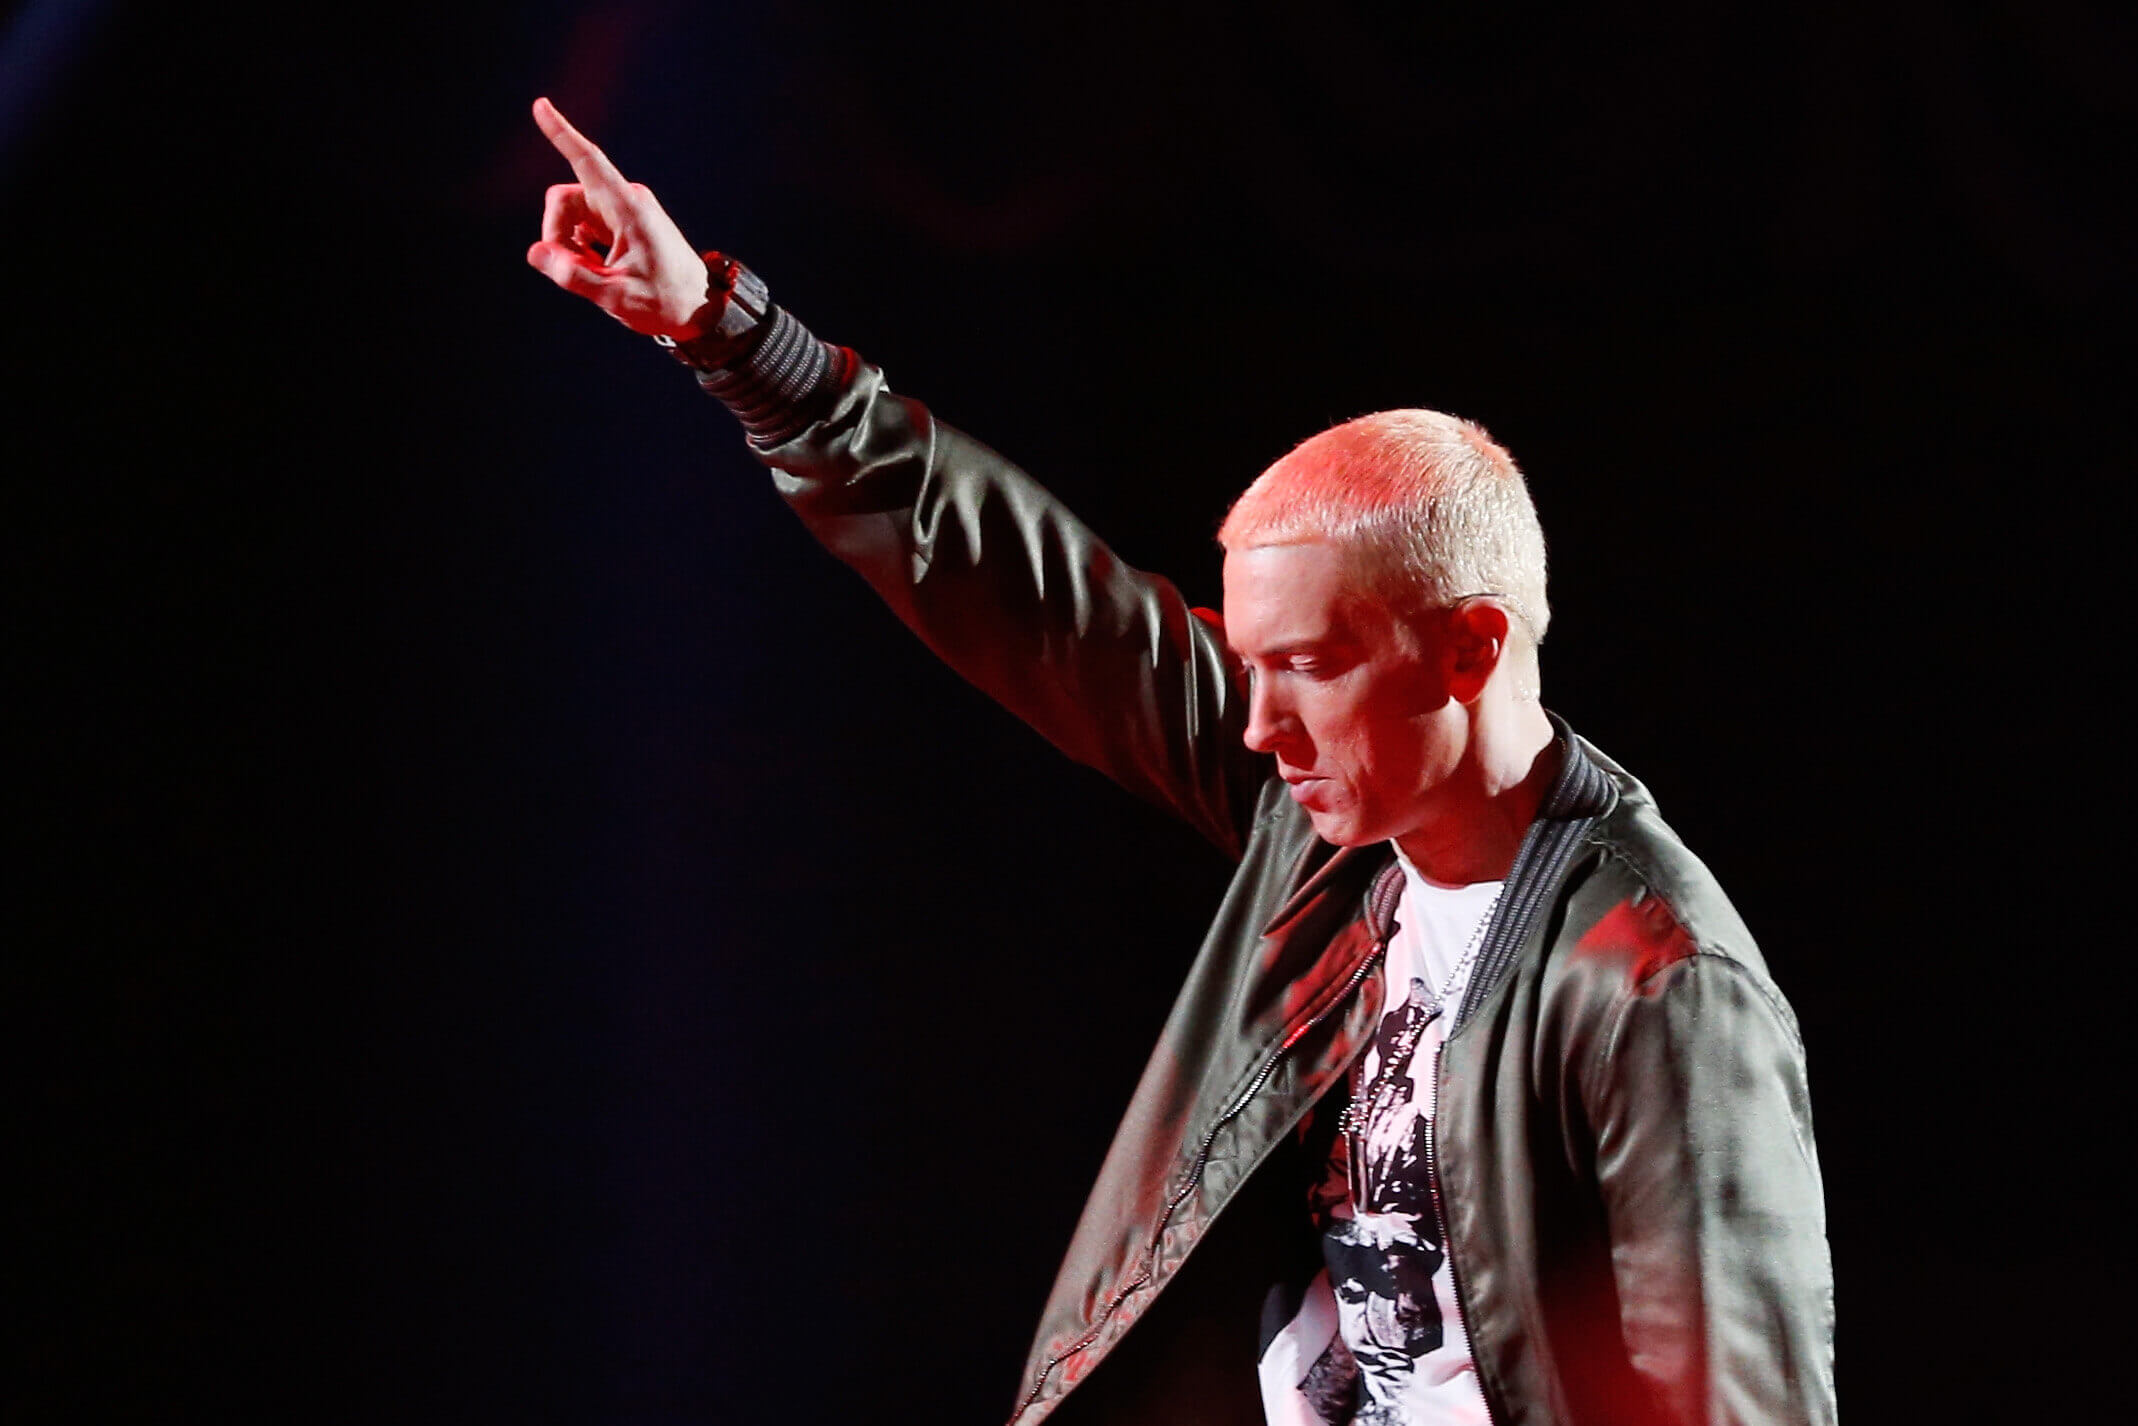 Eminem Fans Defend Rapper's Controversial Lyrics on Surprise 11th Album